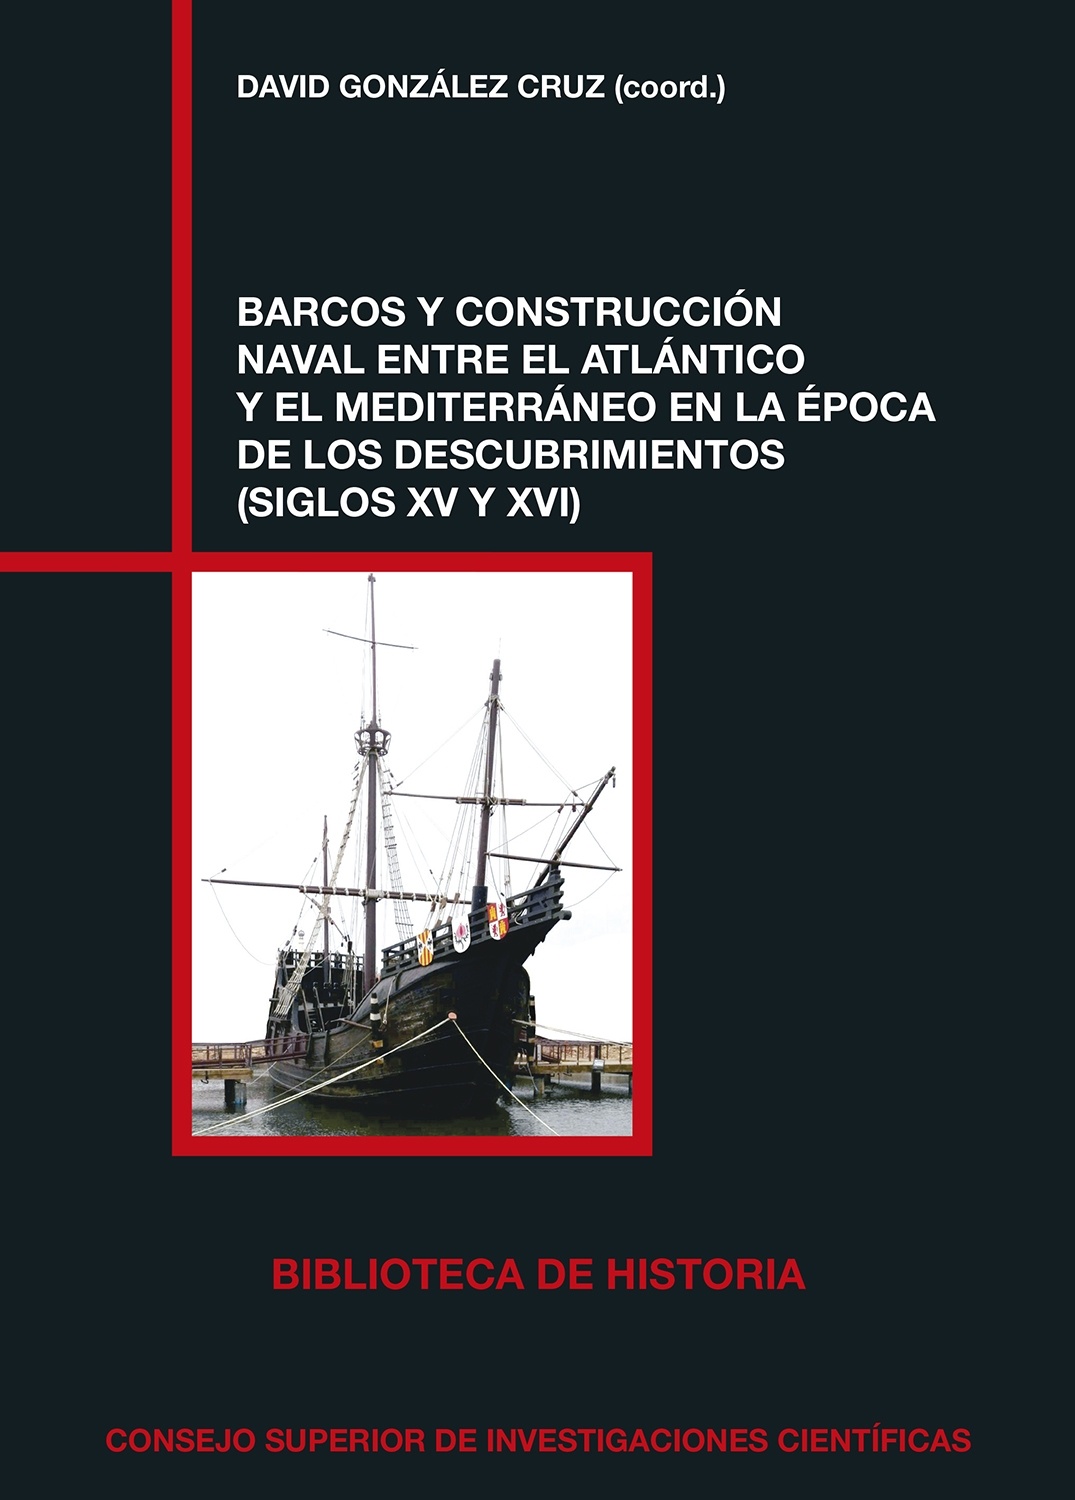 Barcos y construcción naval entre el Atlántico y el Mediterráneo en la época "de los descubrimientos (Siglos XV y XVI)"